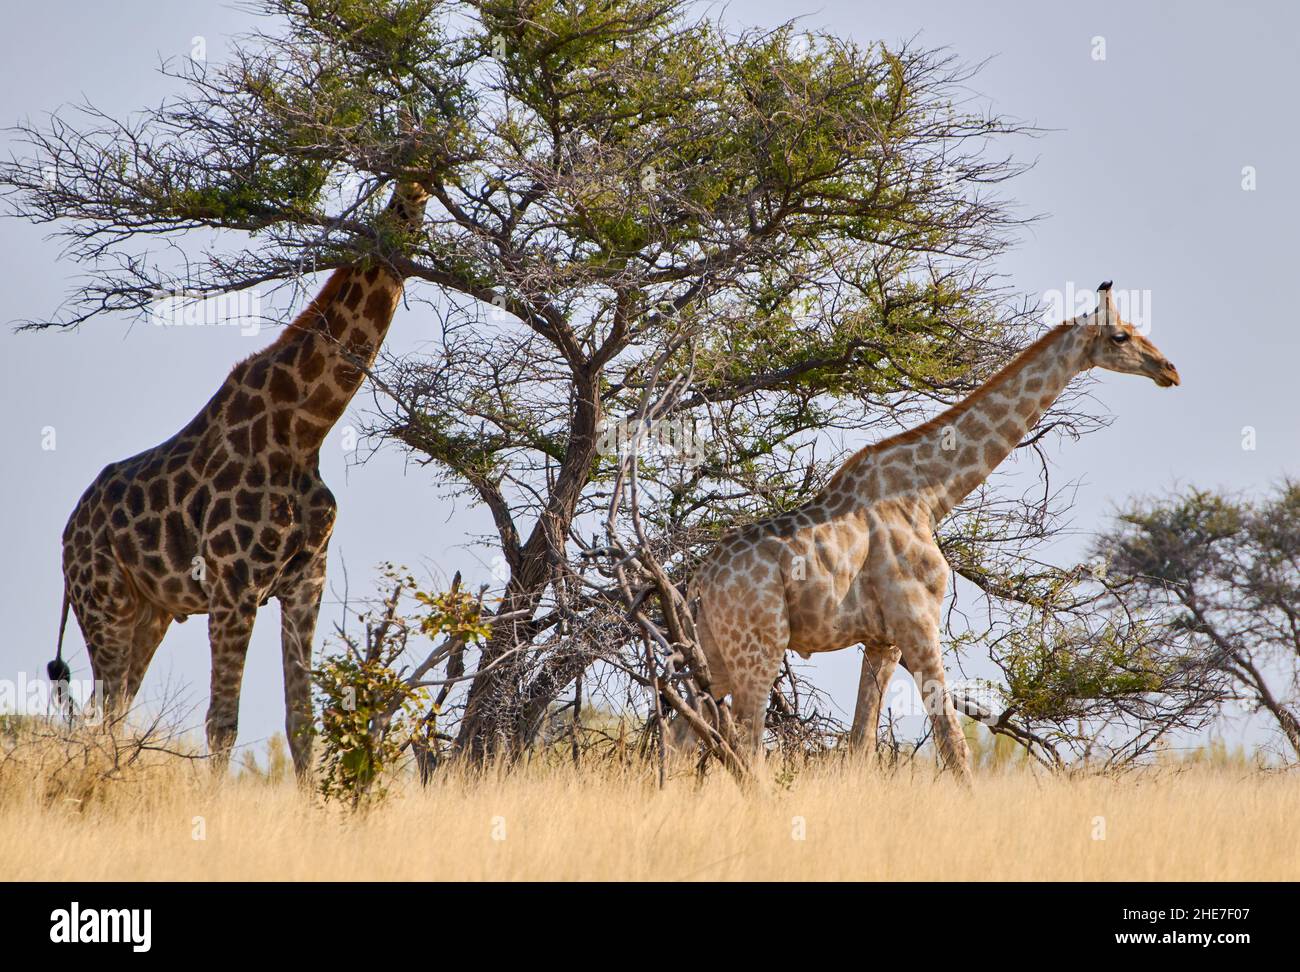 Vista lateral de dos jirafas cruzando el desierto. Animales de safari y vida silvestre en el Parque Nacional Etosha, Namibia, África del Sur. Foto de stock